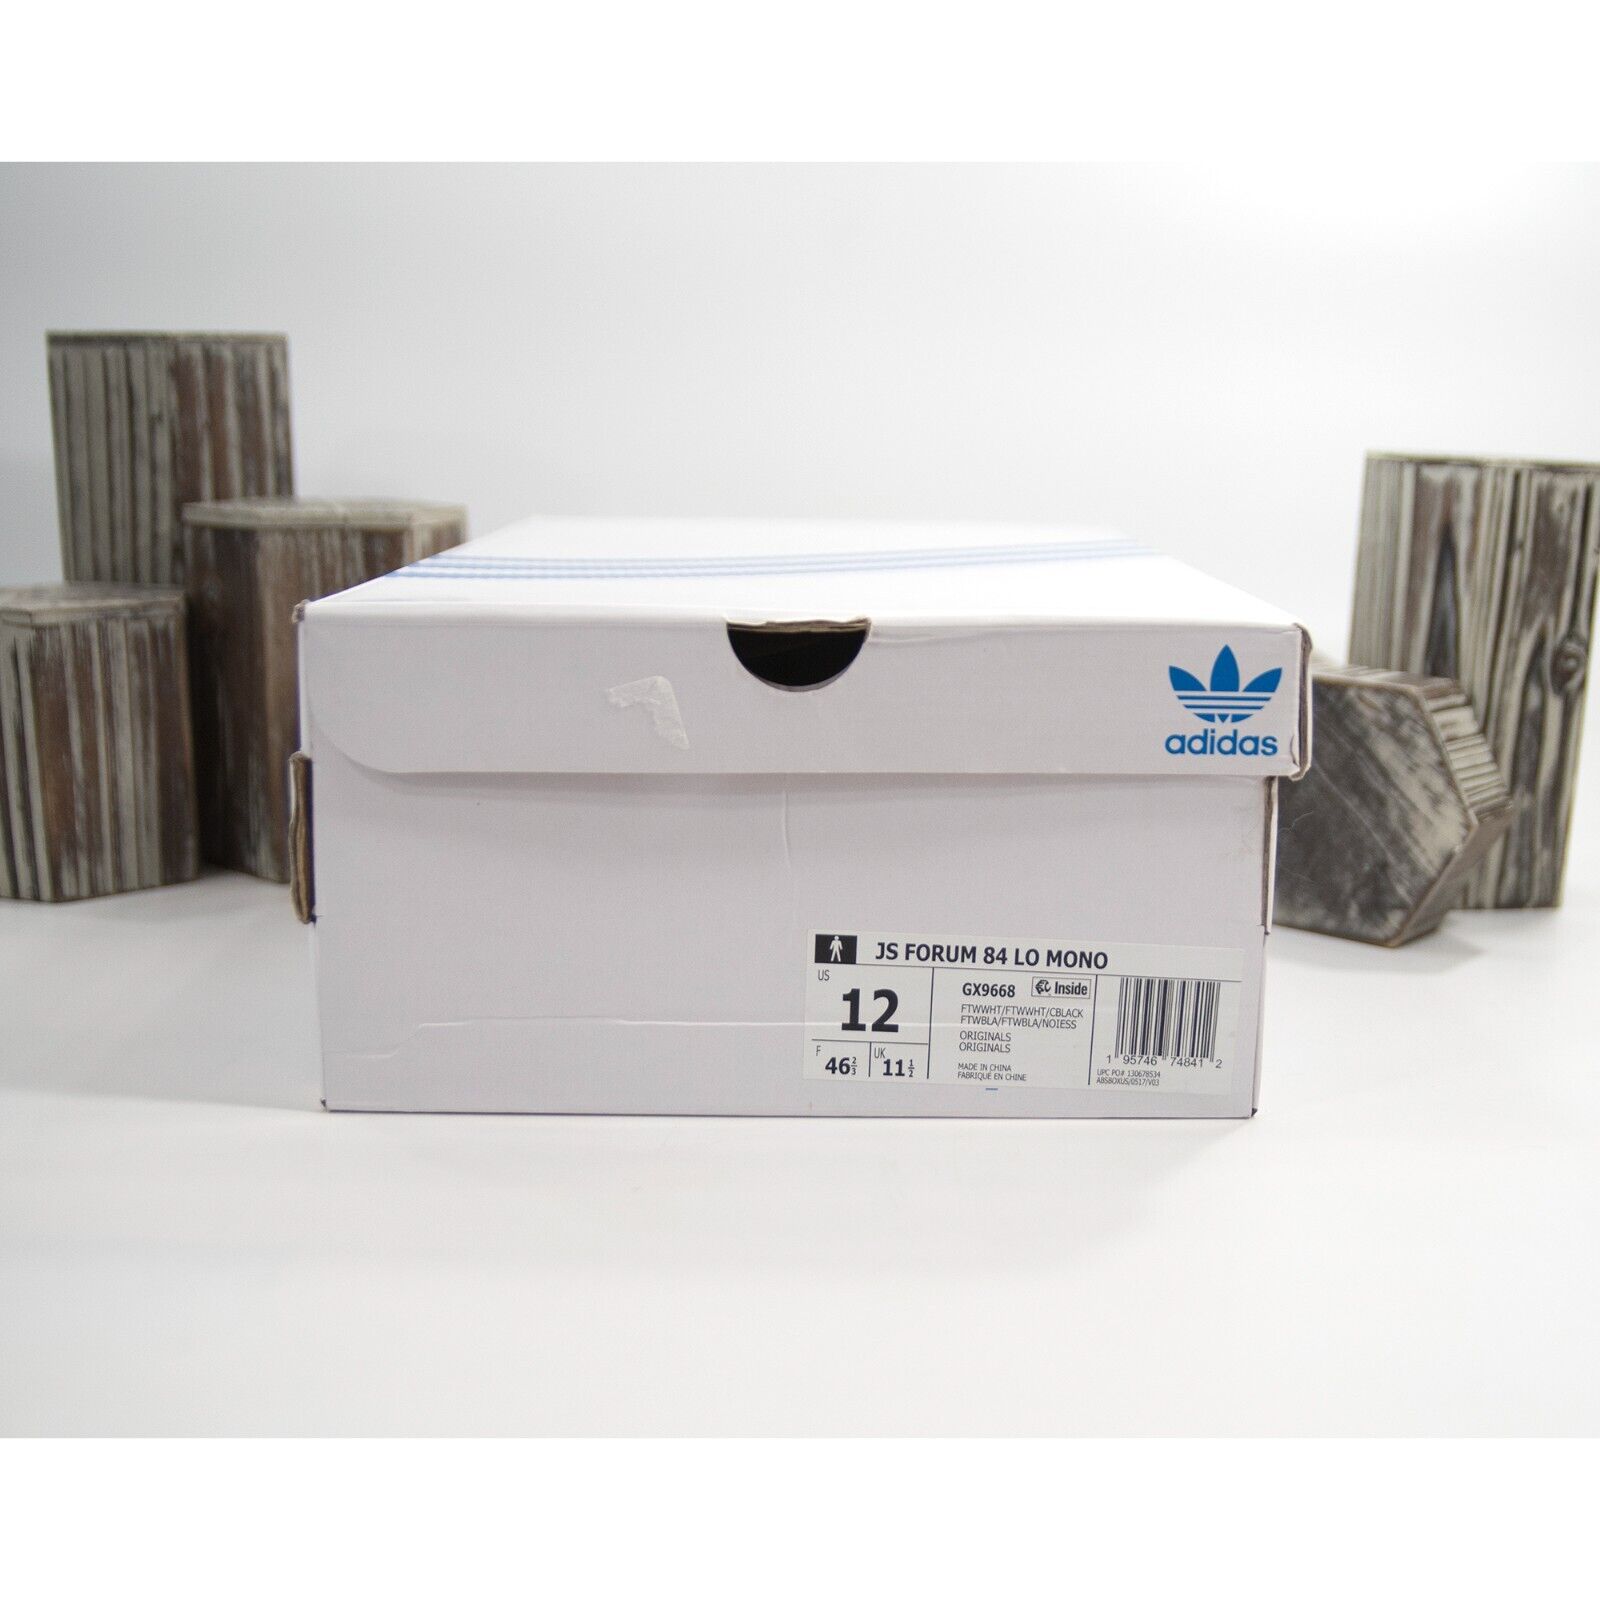 Adidas X Jeremy Scott Forum 84 Low Monogram Sneakers Shoes Mens 12 NIB –  Design Her Boutique